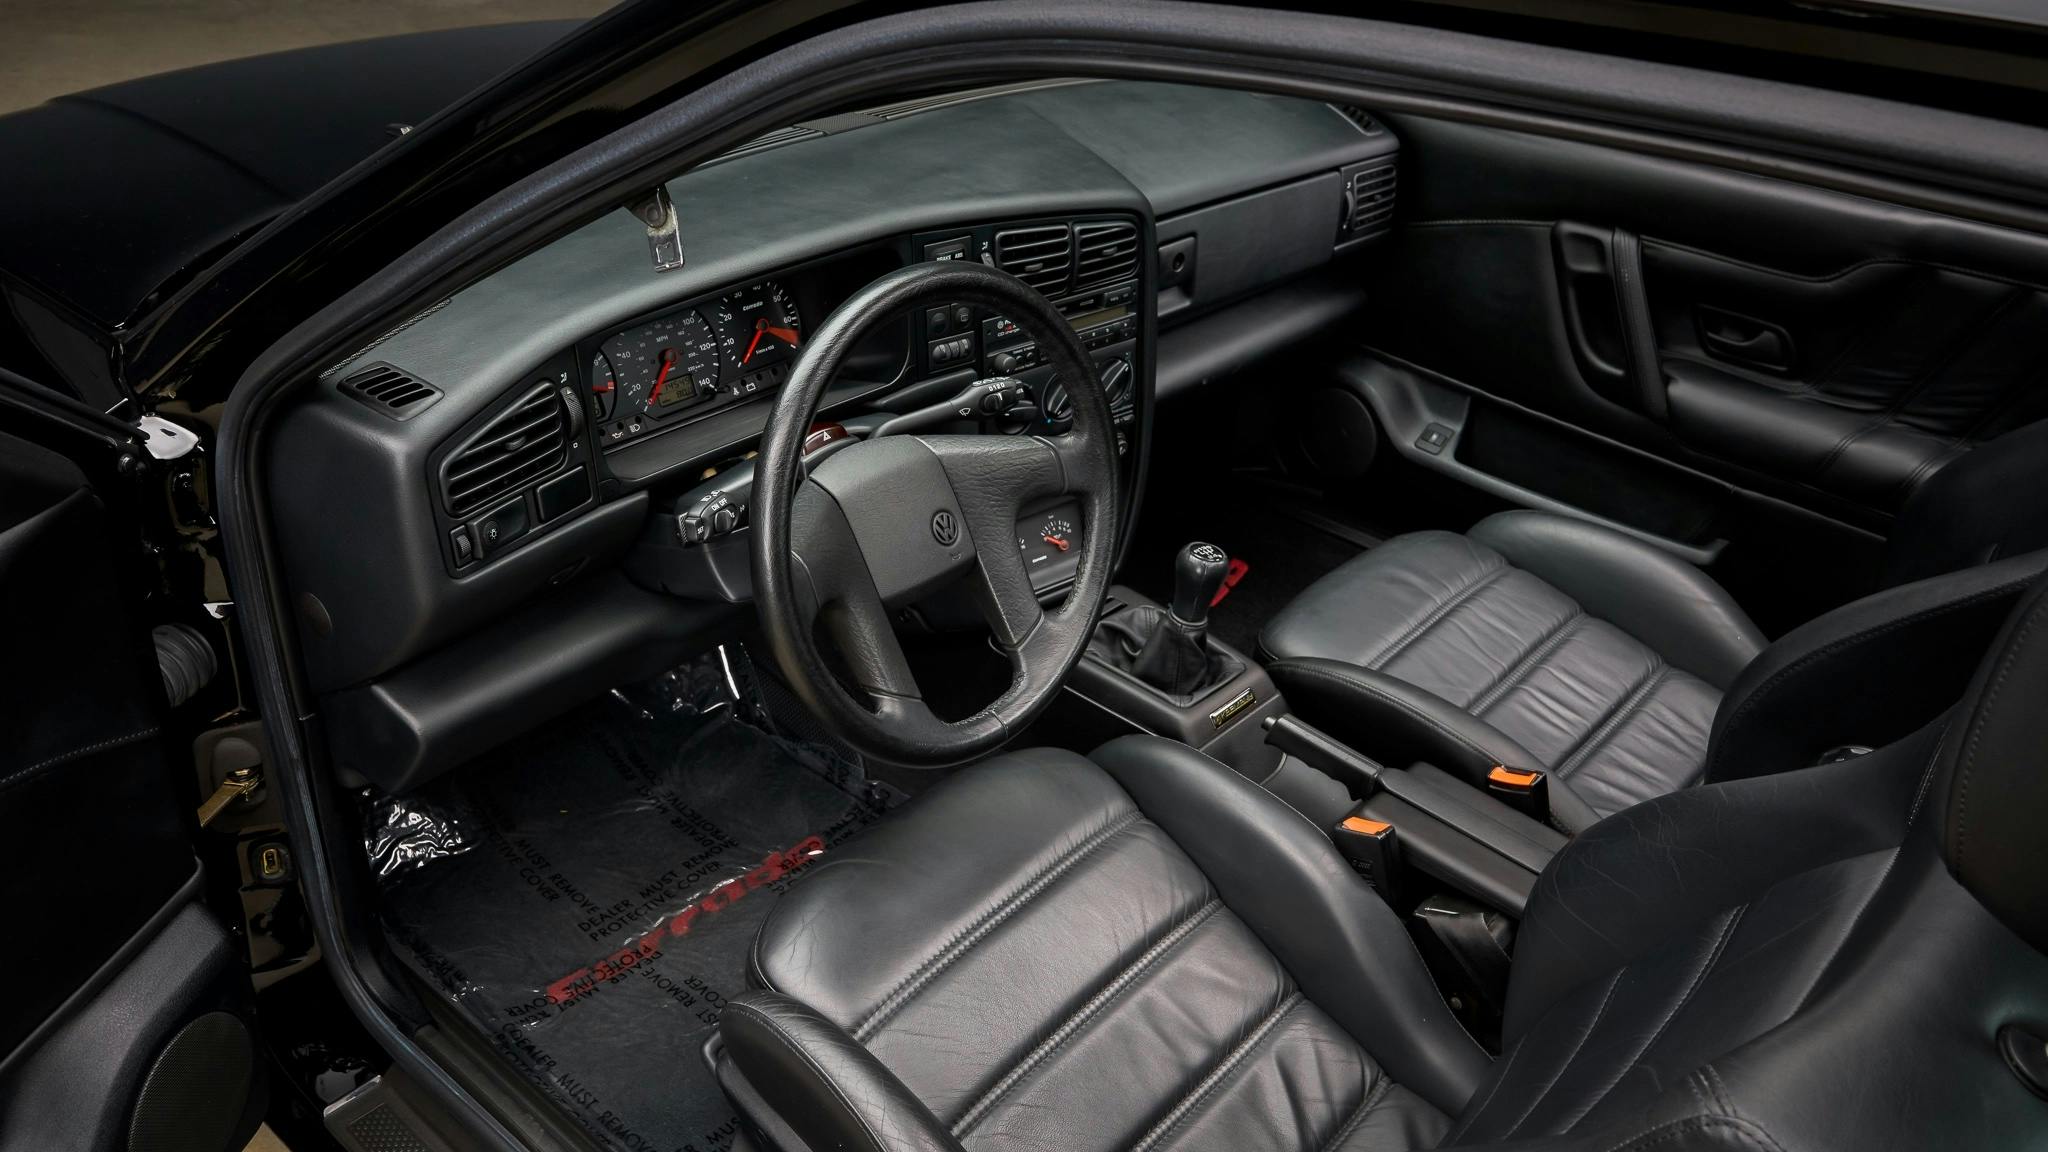 1993 VW Corrado interior high angle